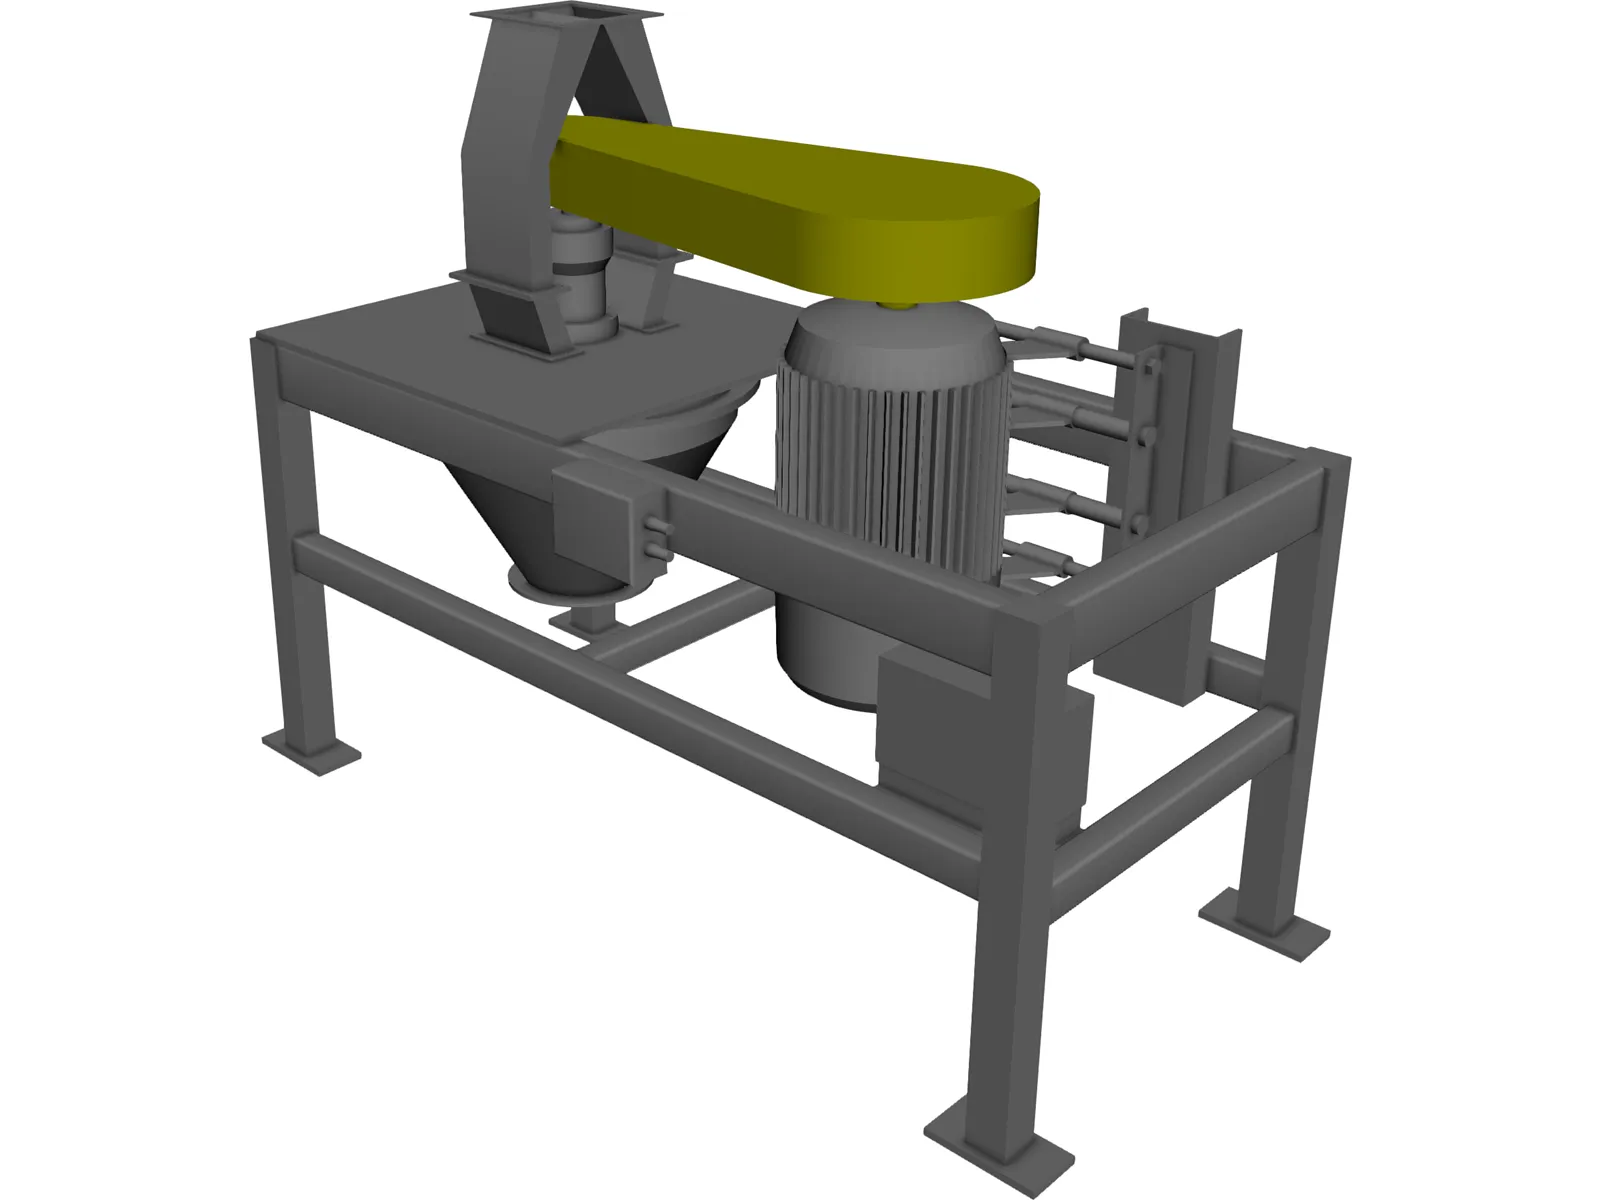 Sturtevant Mill 3D Model